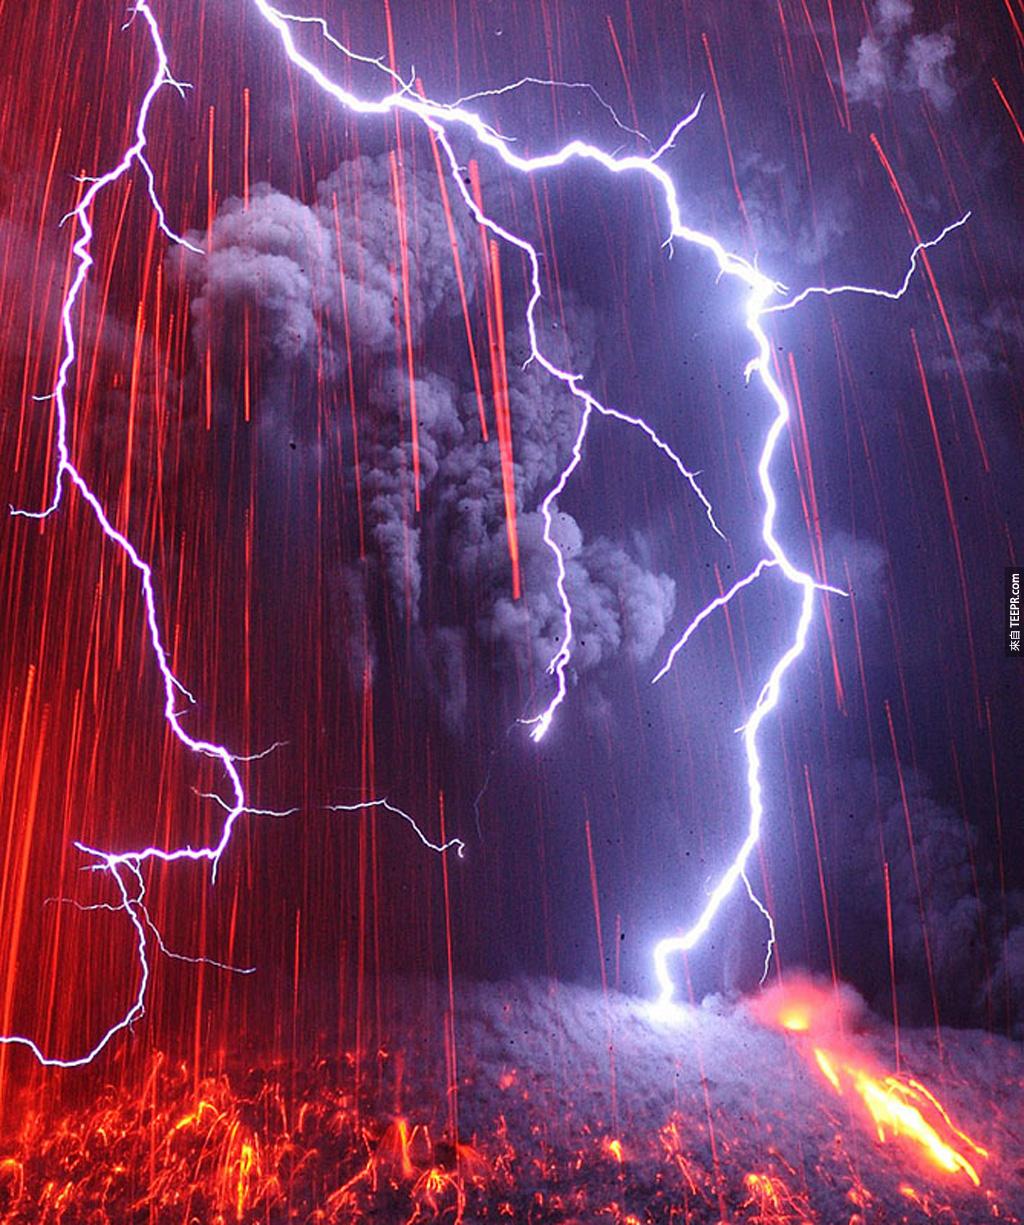 最恐怖的組合: 火山爆發 + 雷電風暴 (日本九州)。<BR><BR>